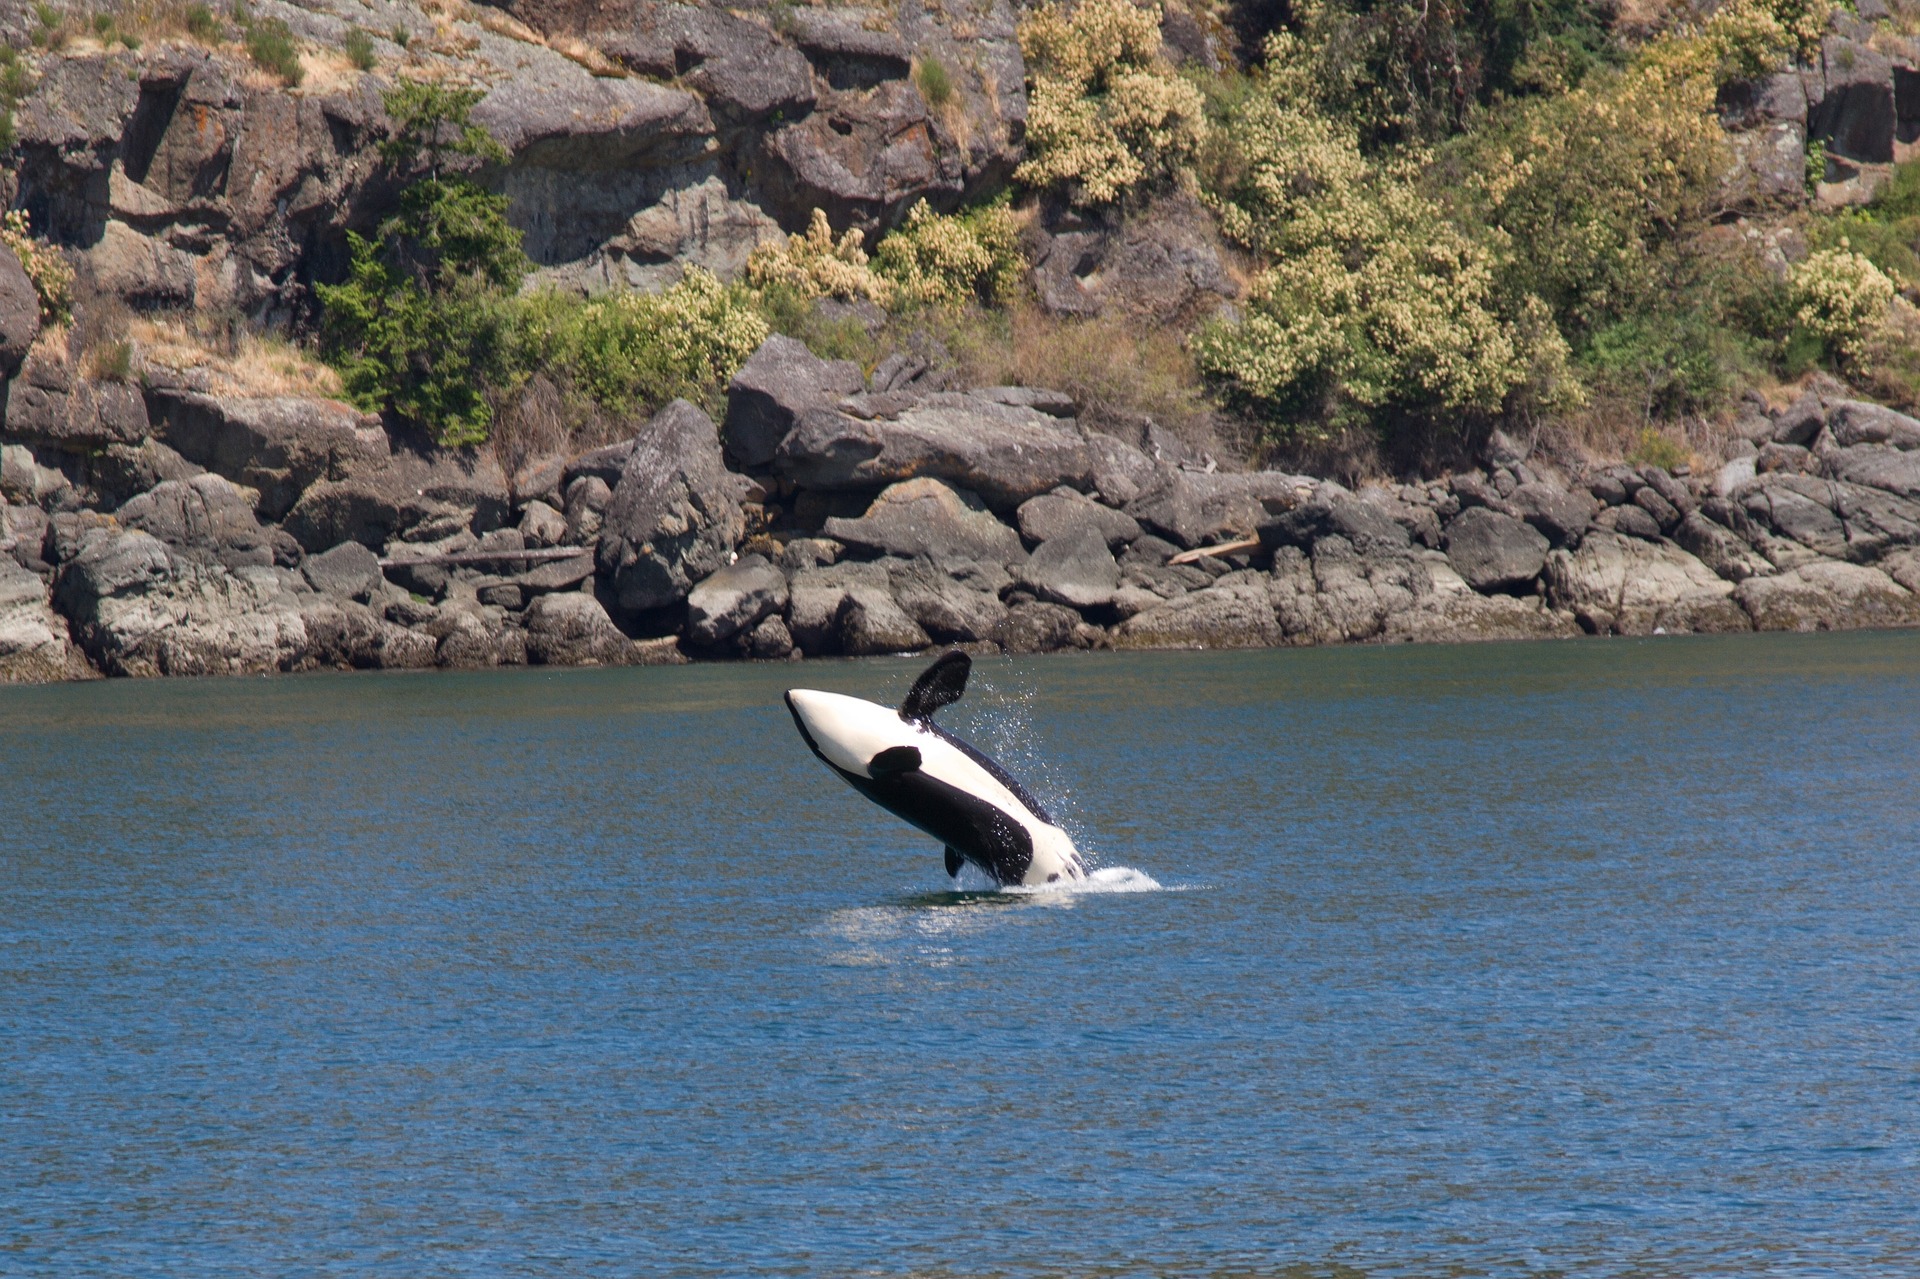 Les orques, ou épaulards, sont de puissants cétacés prédateurs largement répartis dans les océans. © jazapp, Pixabay